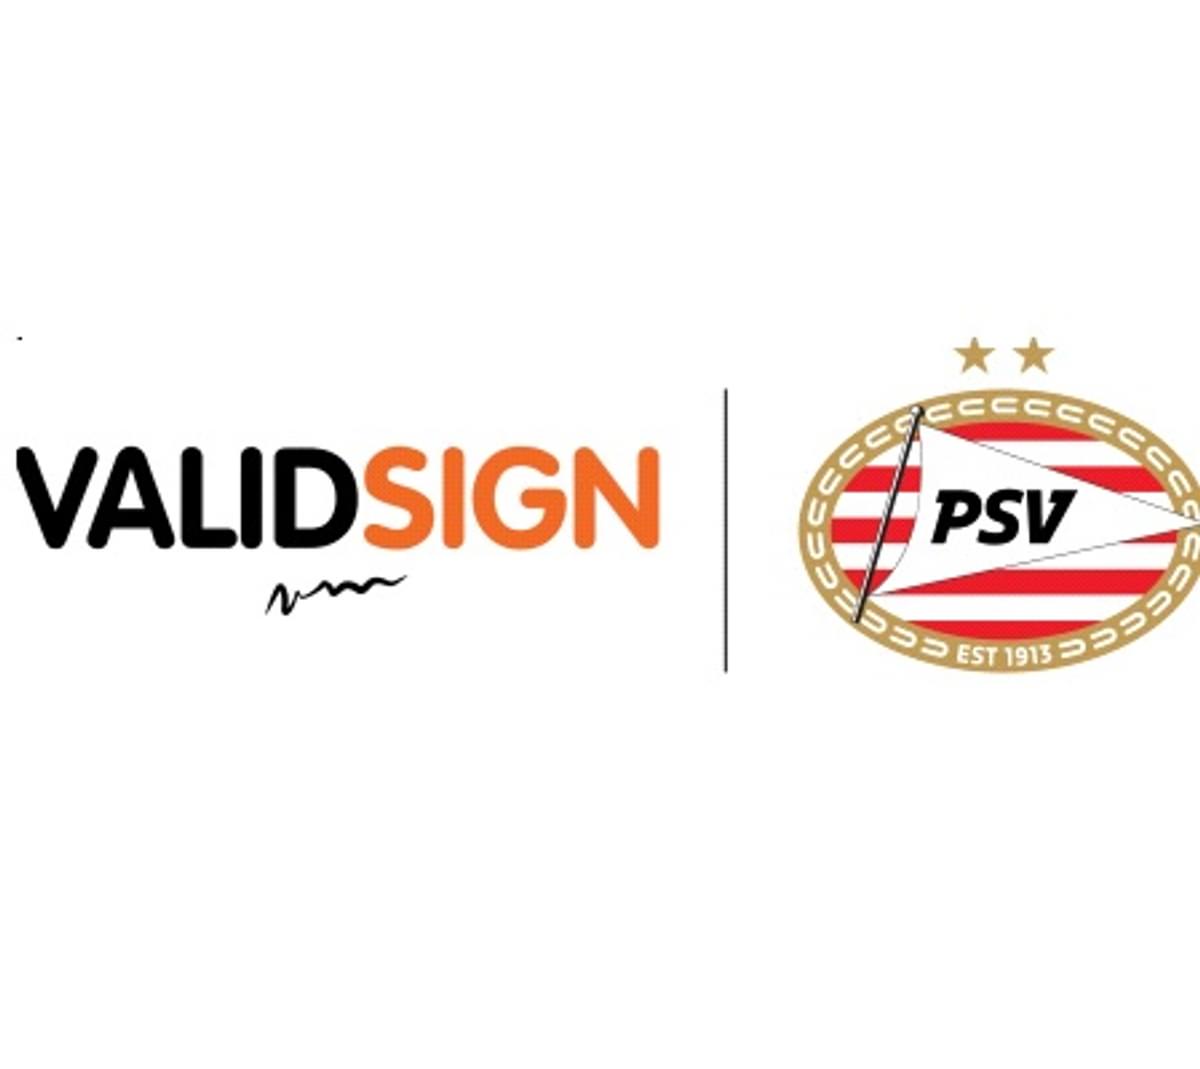 ValidSign Official eSigning Partner PSV image